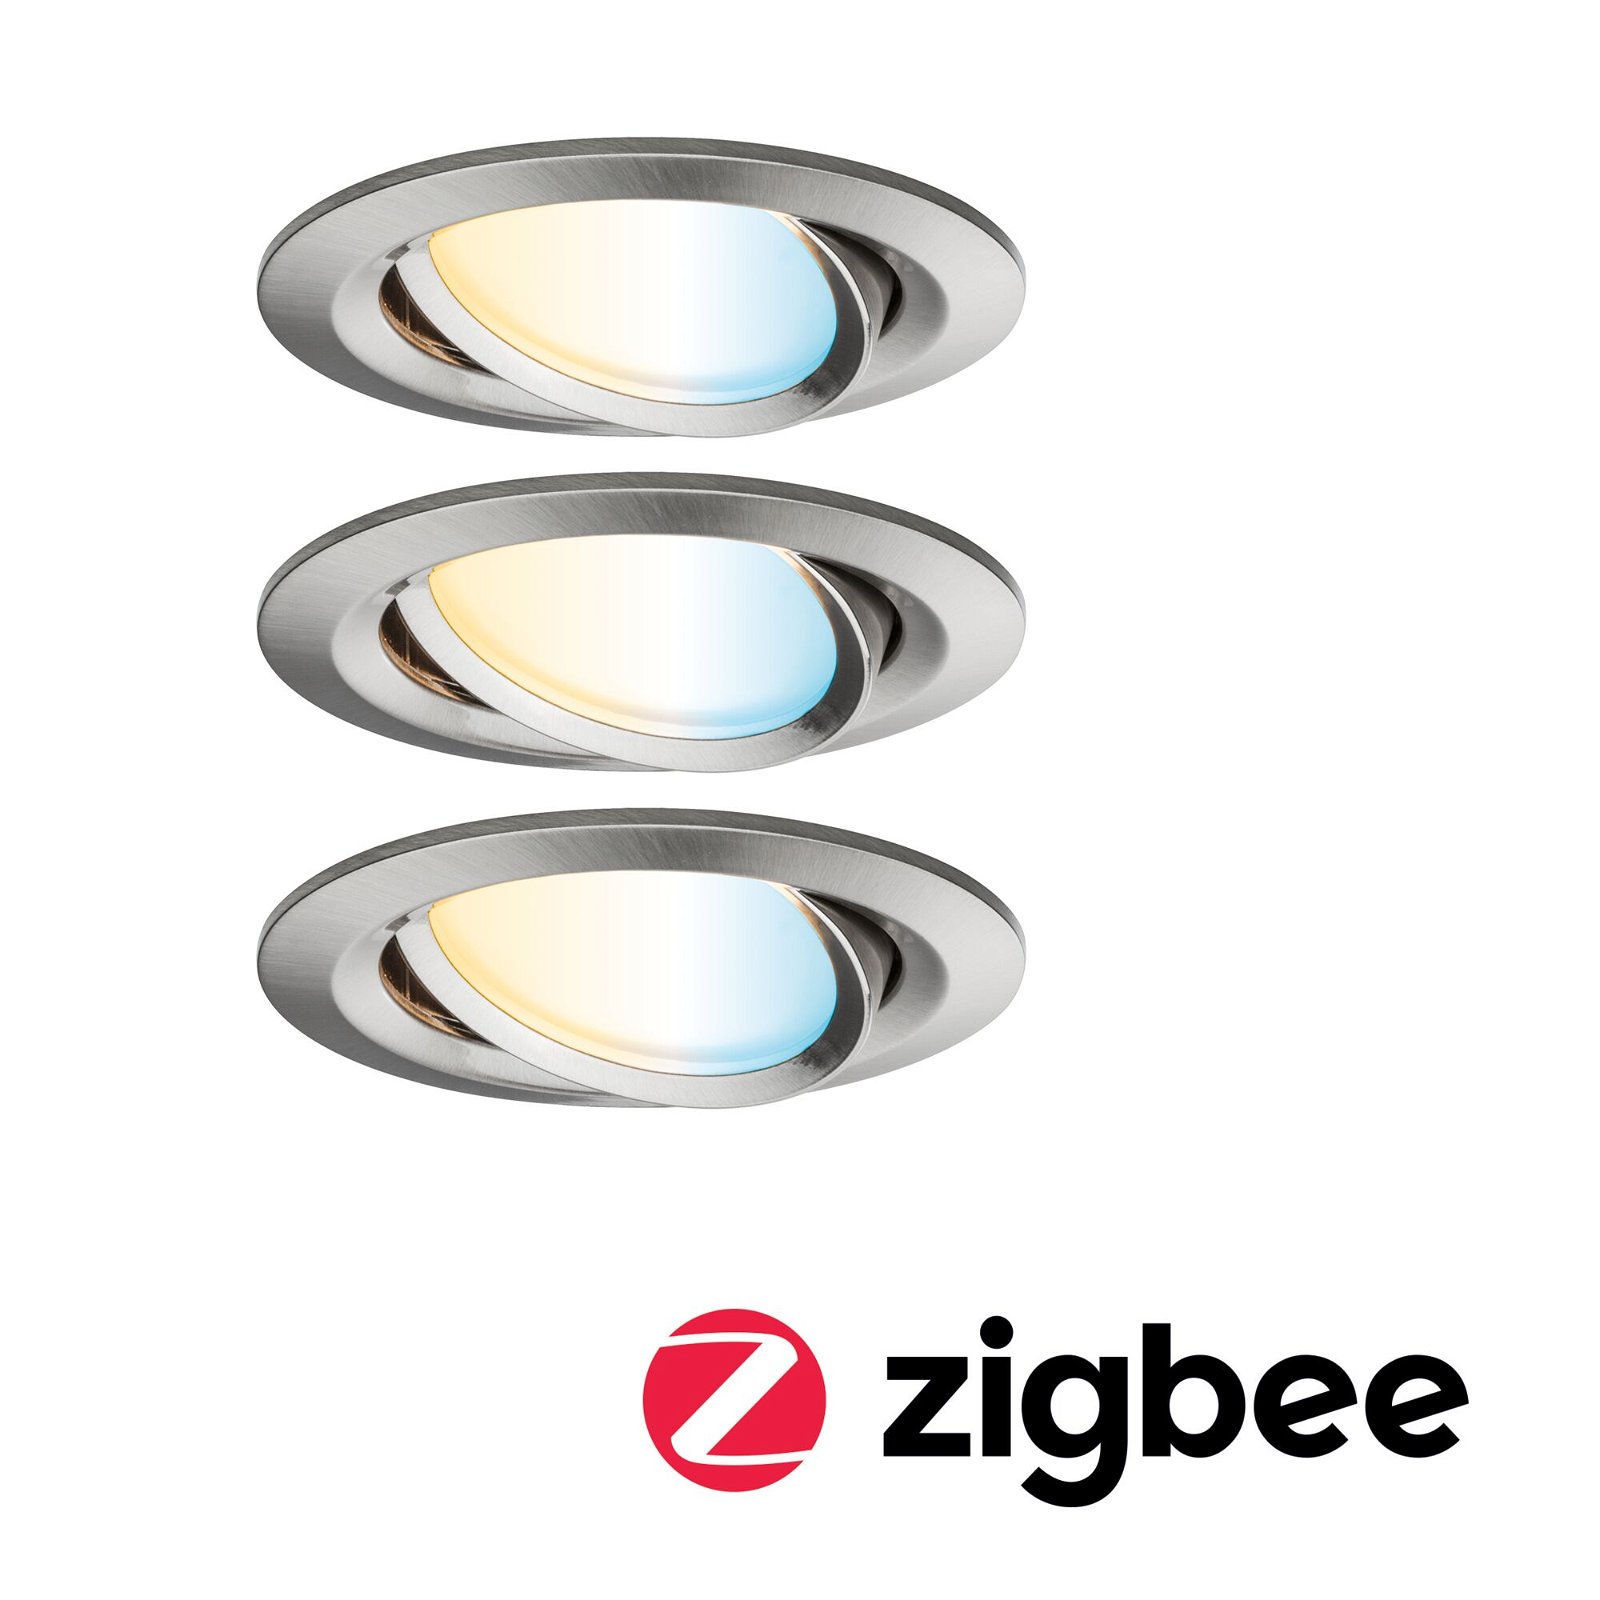 LED-inbouwlamp Smart Home Zigbee Nova Plus Coin Basisset zwenkbaar rond 84mm 50° Coin 3x6W 3x470lm 230V dimbaar Tunable White Staal geborsteld